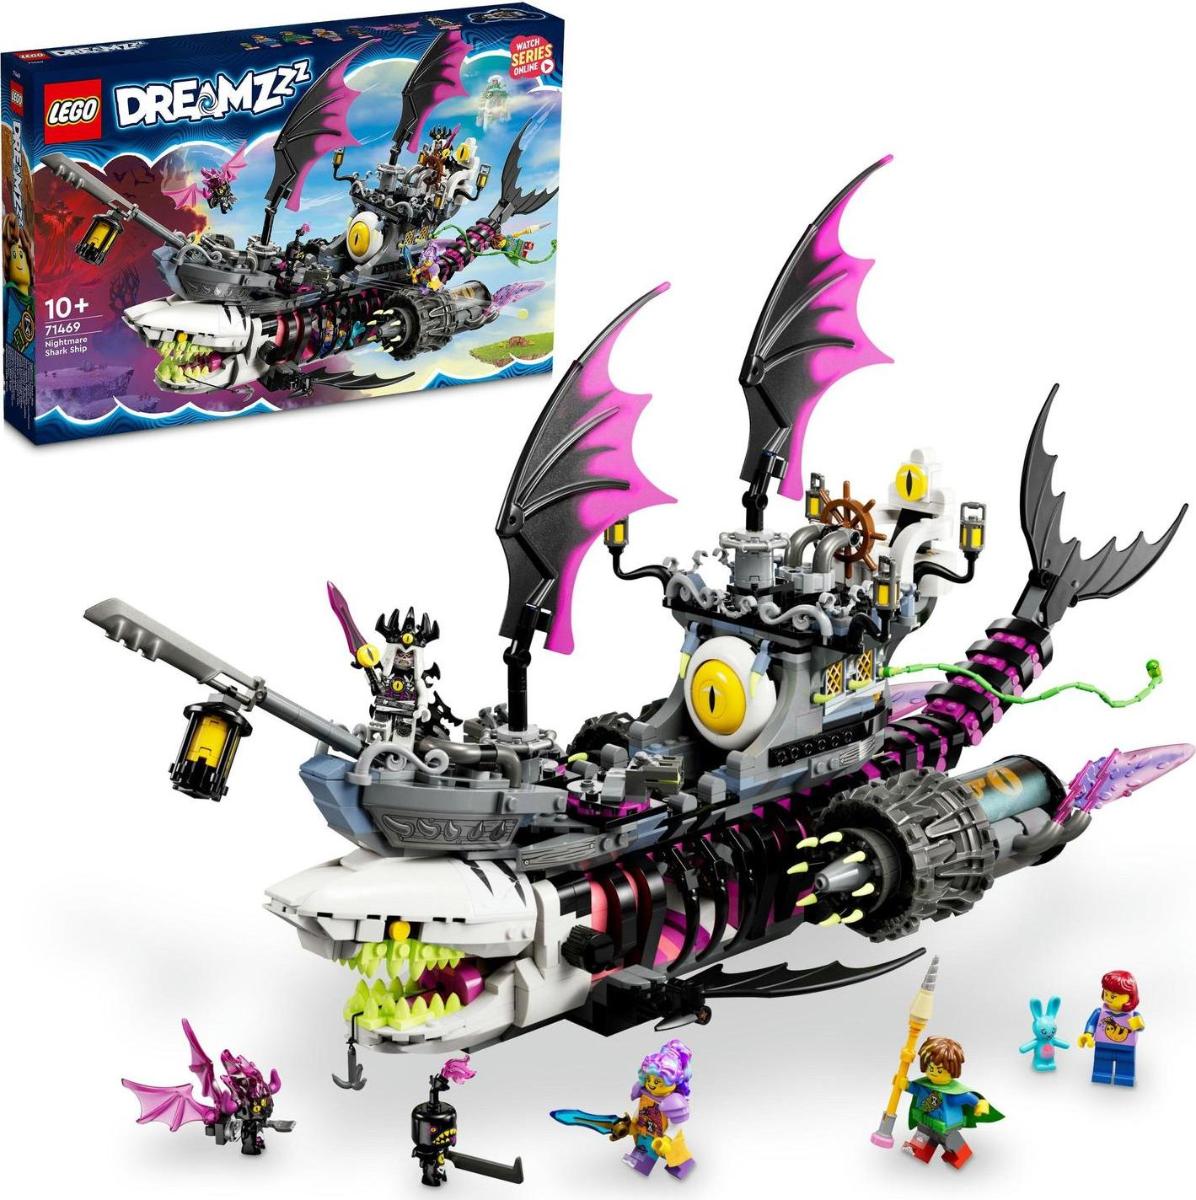 LEGO DREAMZzz 71469 Žraločkoloď z nočních můr - Hračky